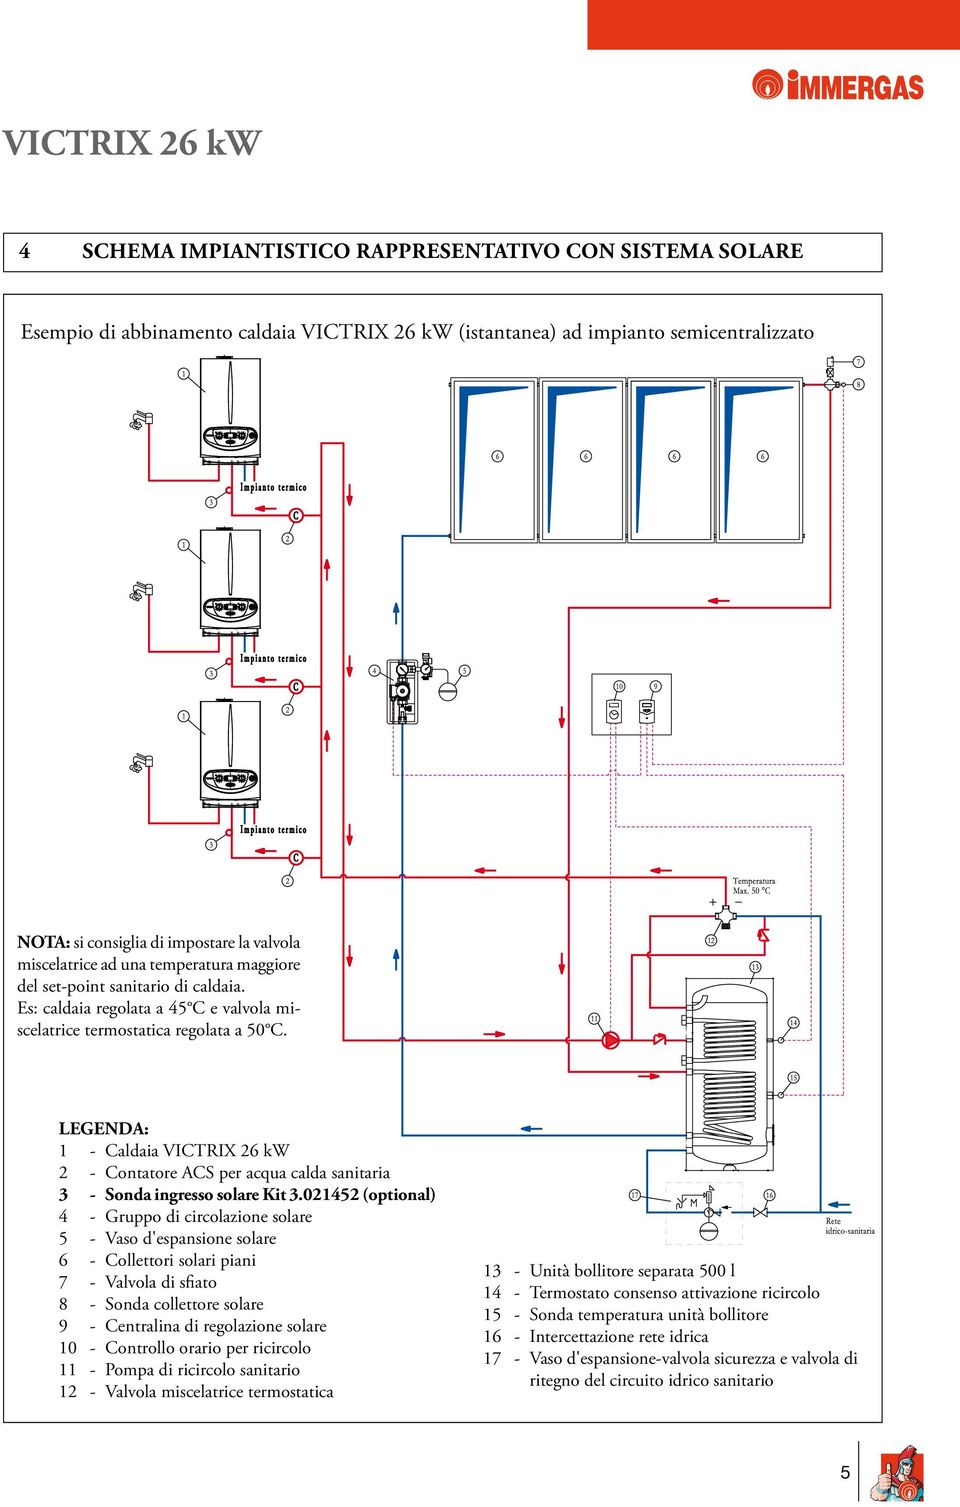 LEGENDA: 1 - Caldaia VICTRIX 26 kw 2 - Contatore ACS per acqua calda sanitaria 3 - Sonda ingresso solare Kit 3.